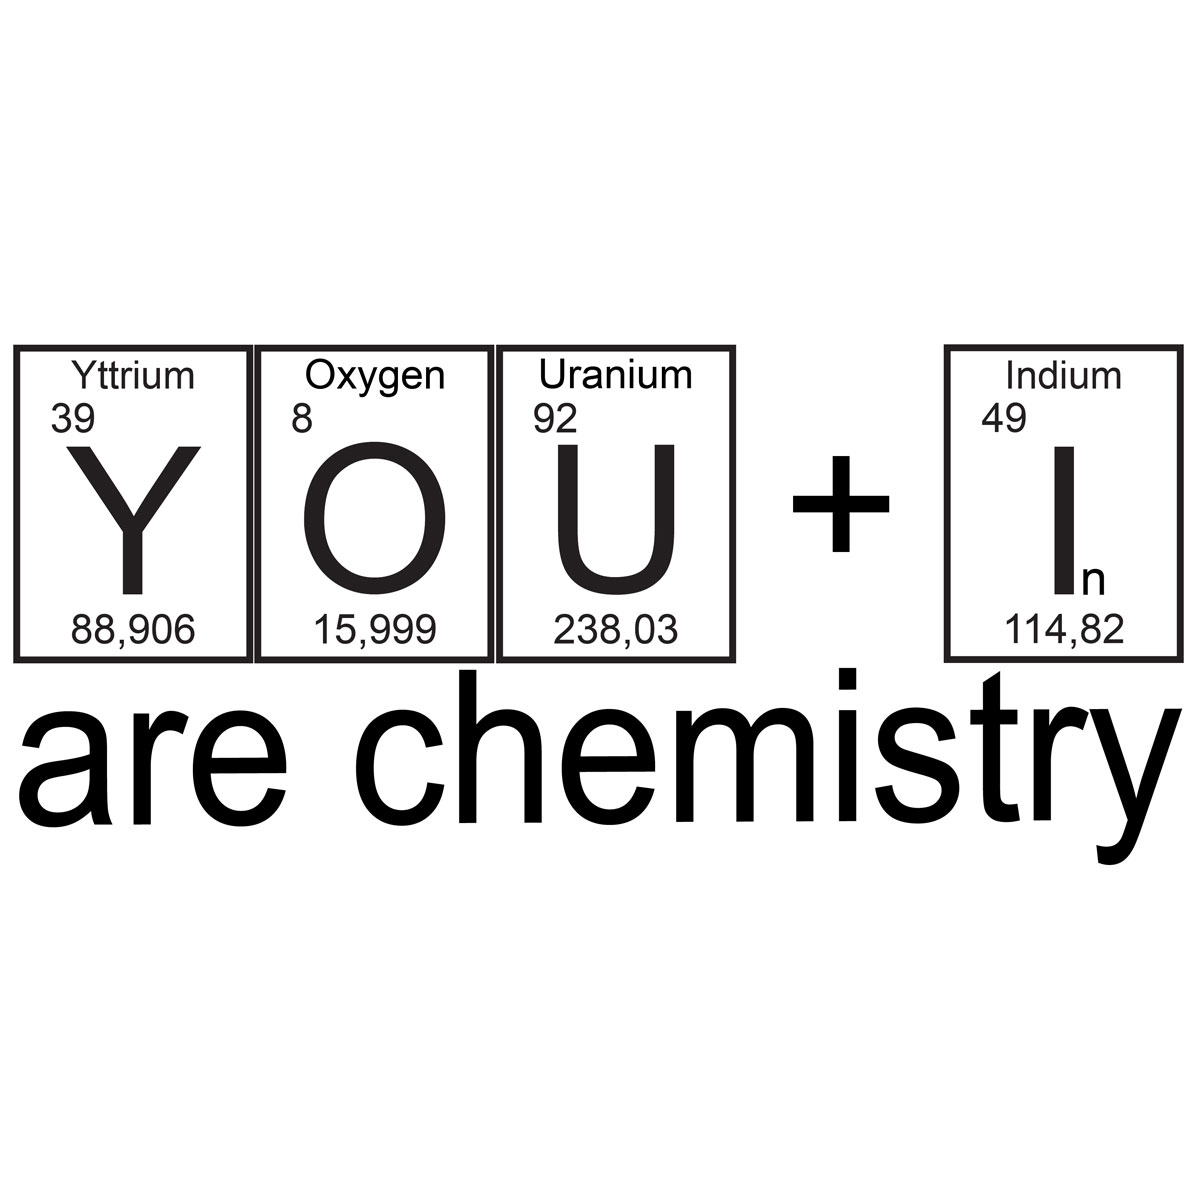 Chemie shirts, du und ich, nerd shirt, Chemie textilien, Laboroberteil, Nerd laborhemden